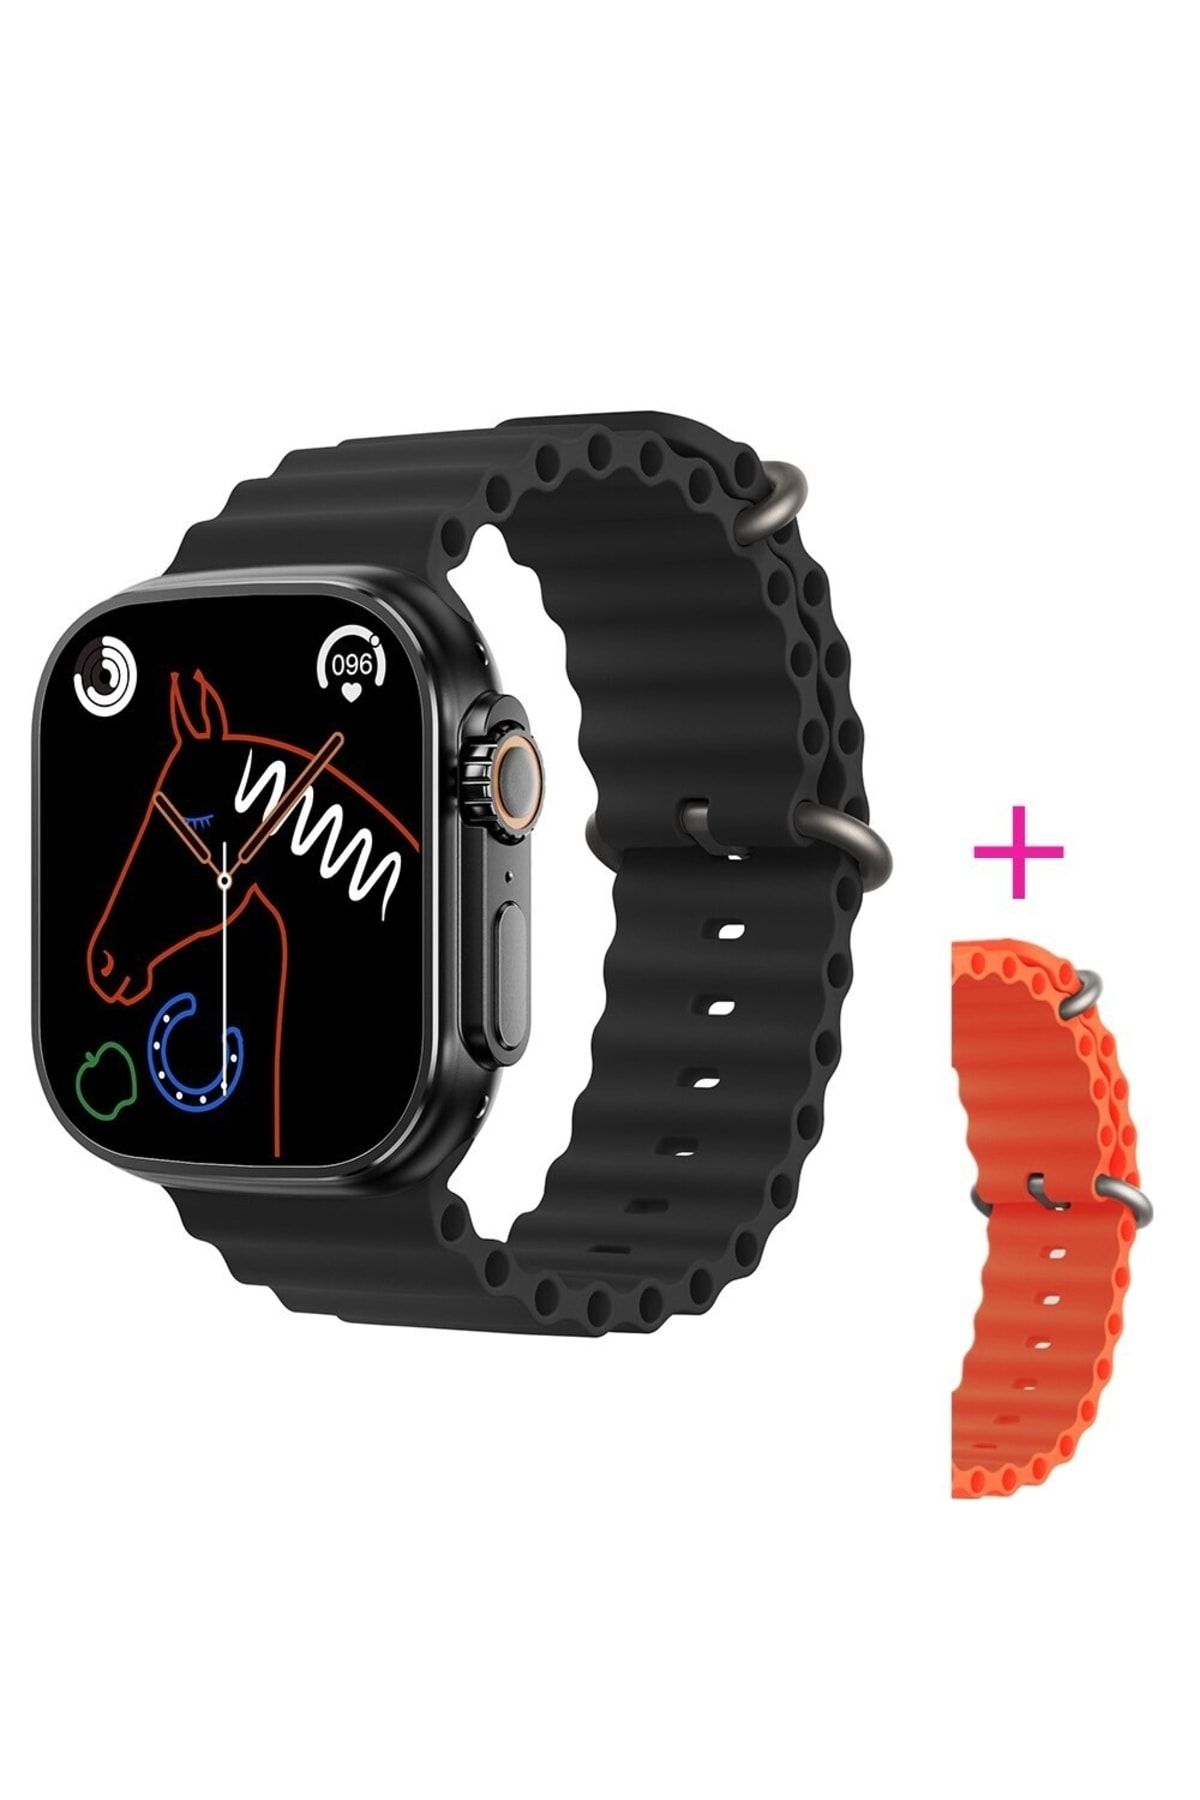 pazariz Gs8 Watch 8 Ultra Akıllı Saat Siyah Türkçe Watch 2.02 Inc Turuncu Silikon Kordon Hediye